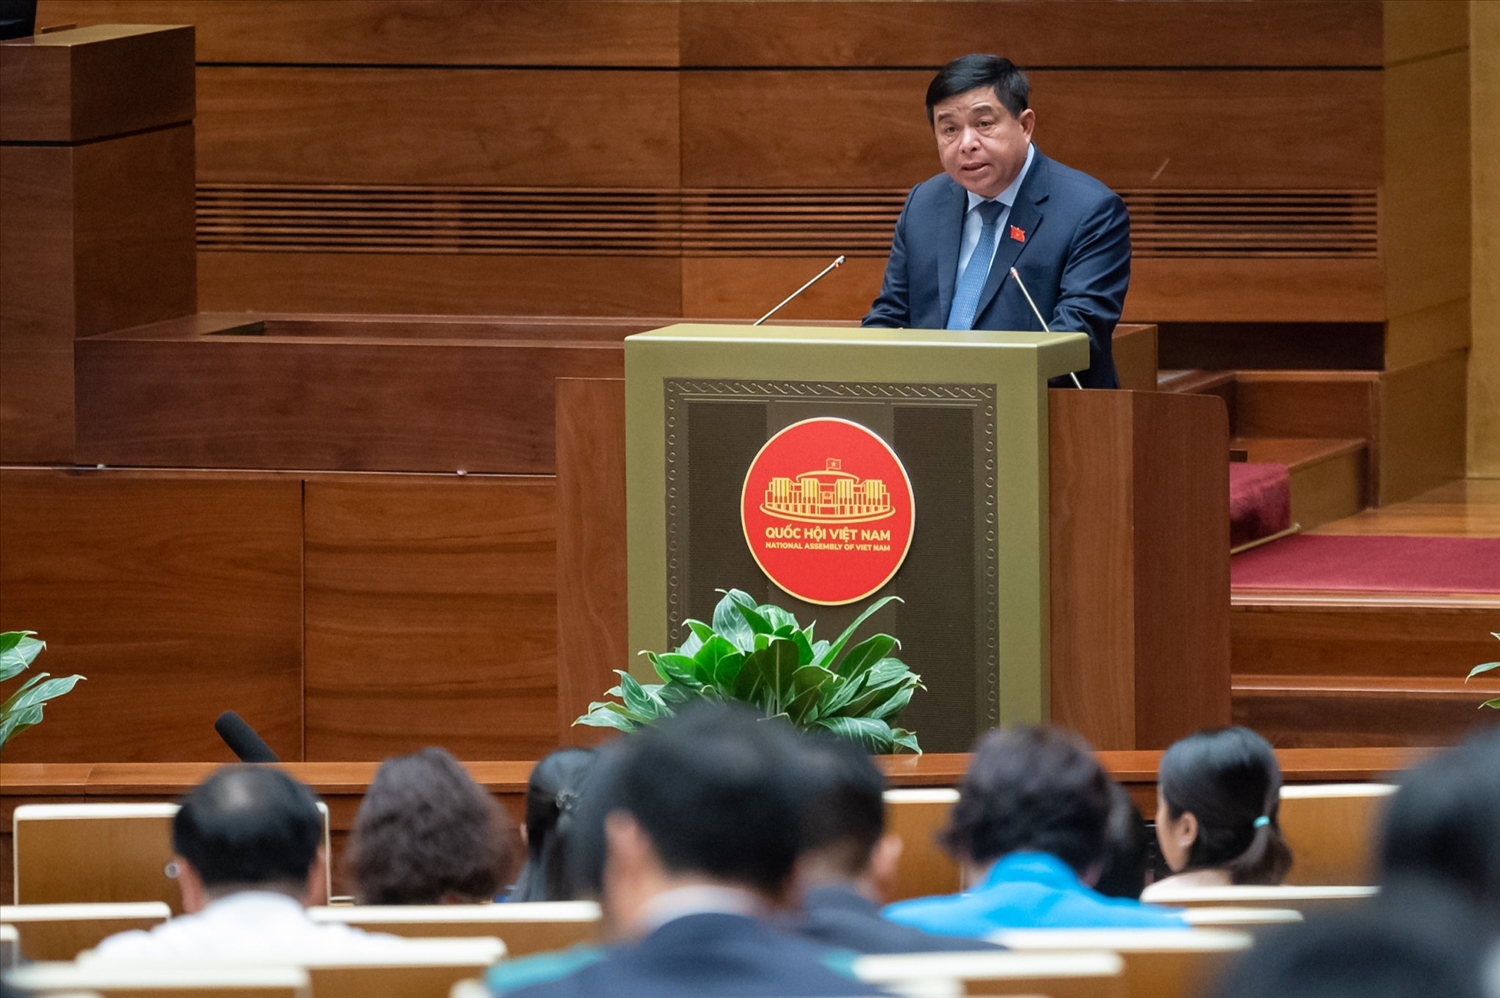 Bộ trưởng Bộ Kế hoạch và Đầu tư Nguyễn Chí Dũng đã trình bày Báo cáo kết quả thực hiện Nghị quyết số 43/2022/QH15